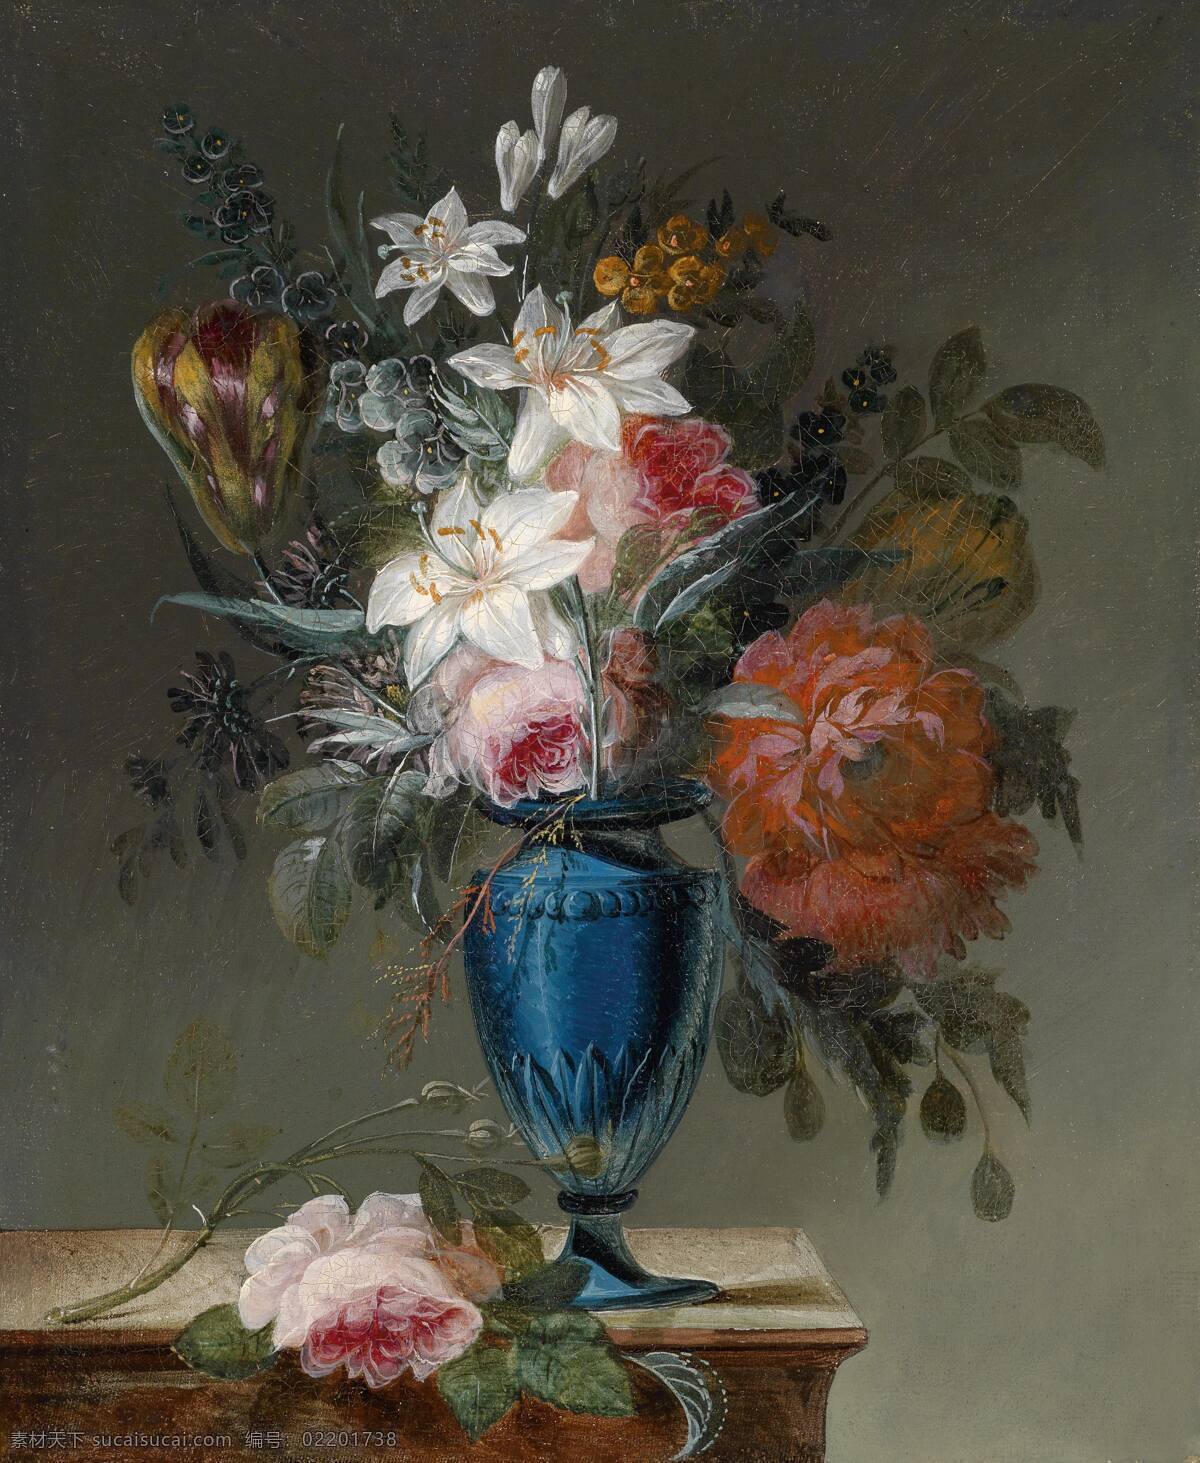 古典油画 绘画书法 文化艺术 油画 永恒之美 乔斯 弗朗索瓦 勒 里什 作品 法国画家 静物鲜花 蓝色花瓶 混搭鲜花 掉落的花朵 家居装饰素材